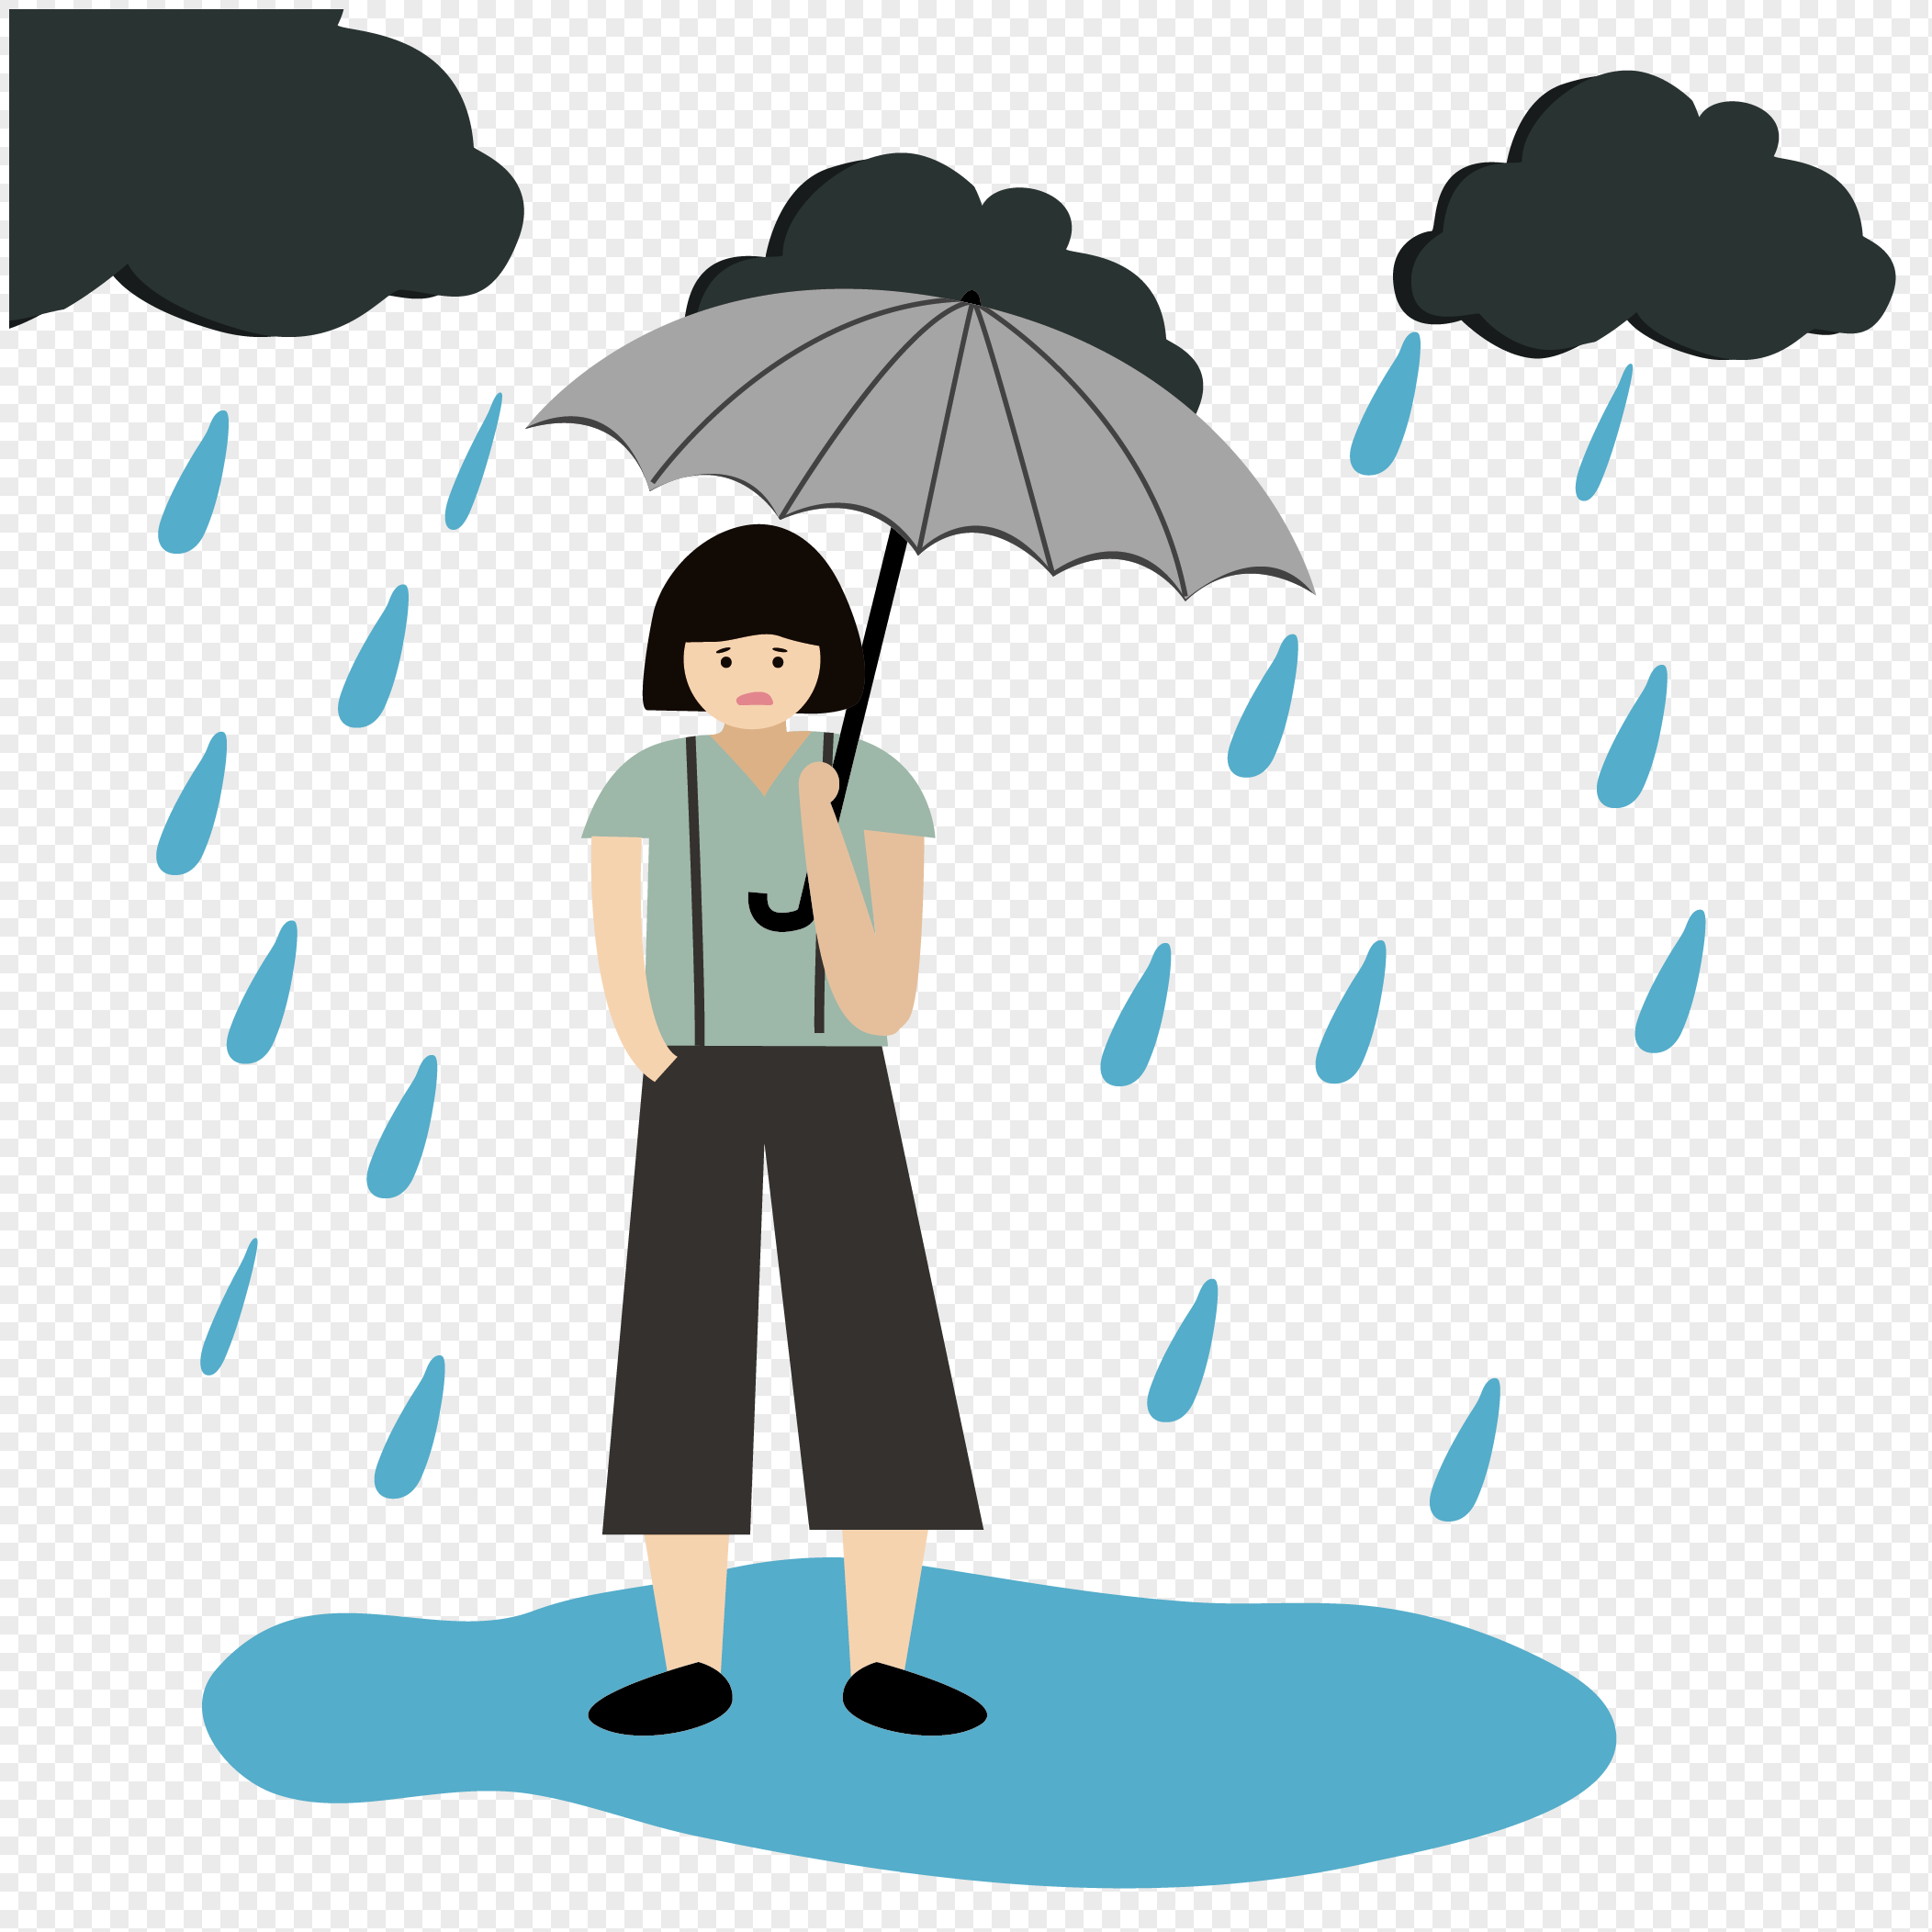 Ilustrasi Hujan Badai Kartun Kecil PNG grafik gambar unduh gratis - Lovepik